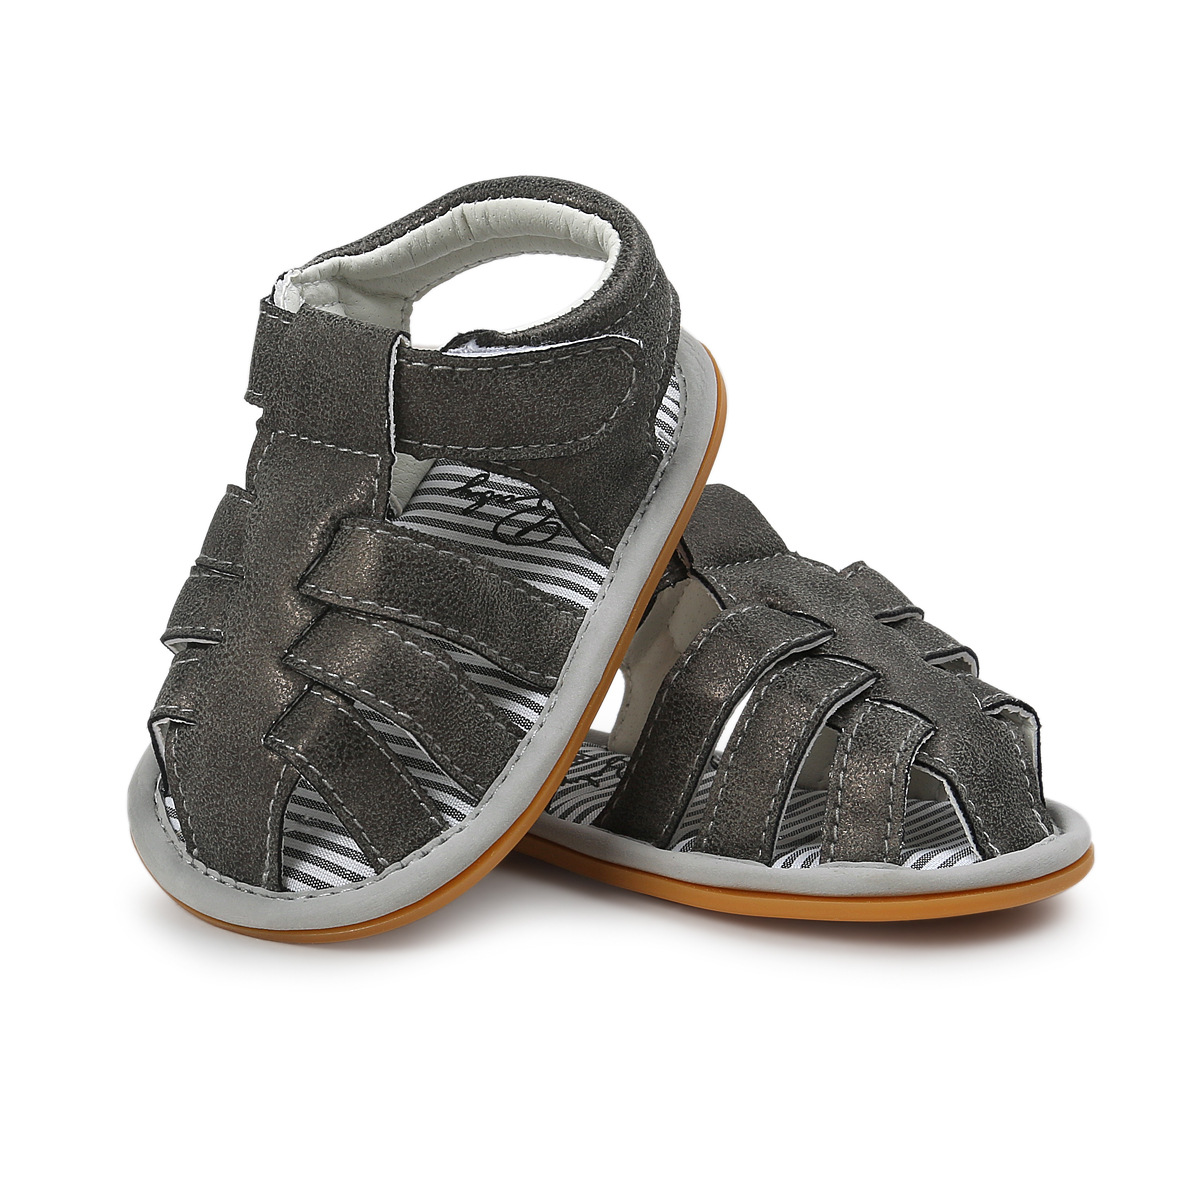 Chaussures bébé en Cuir synthétique - Ref 3436802 Image 41